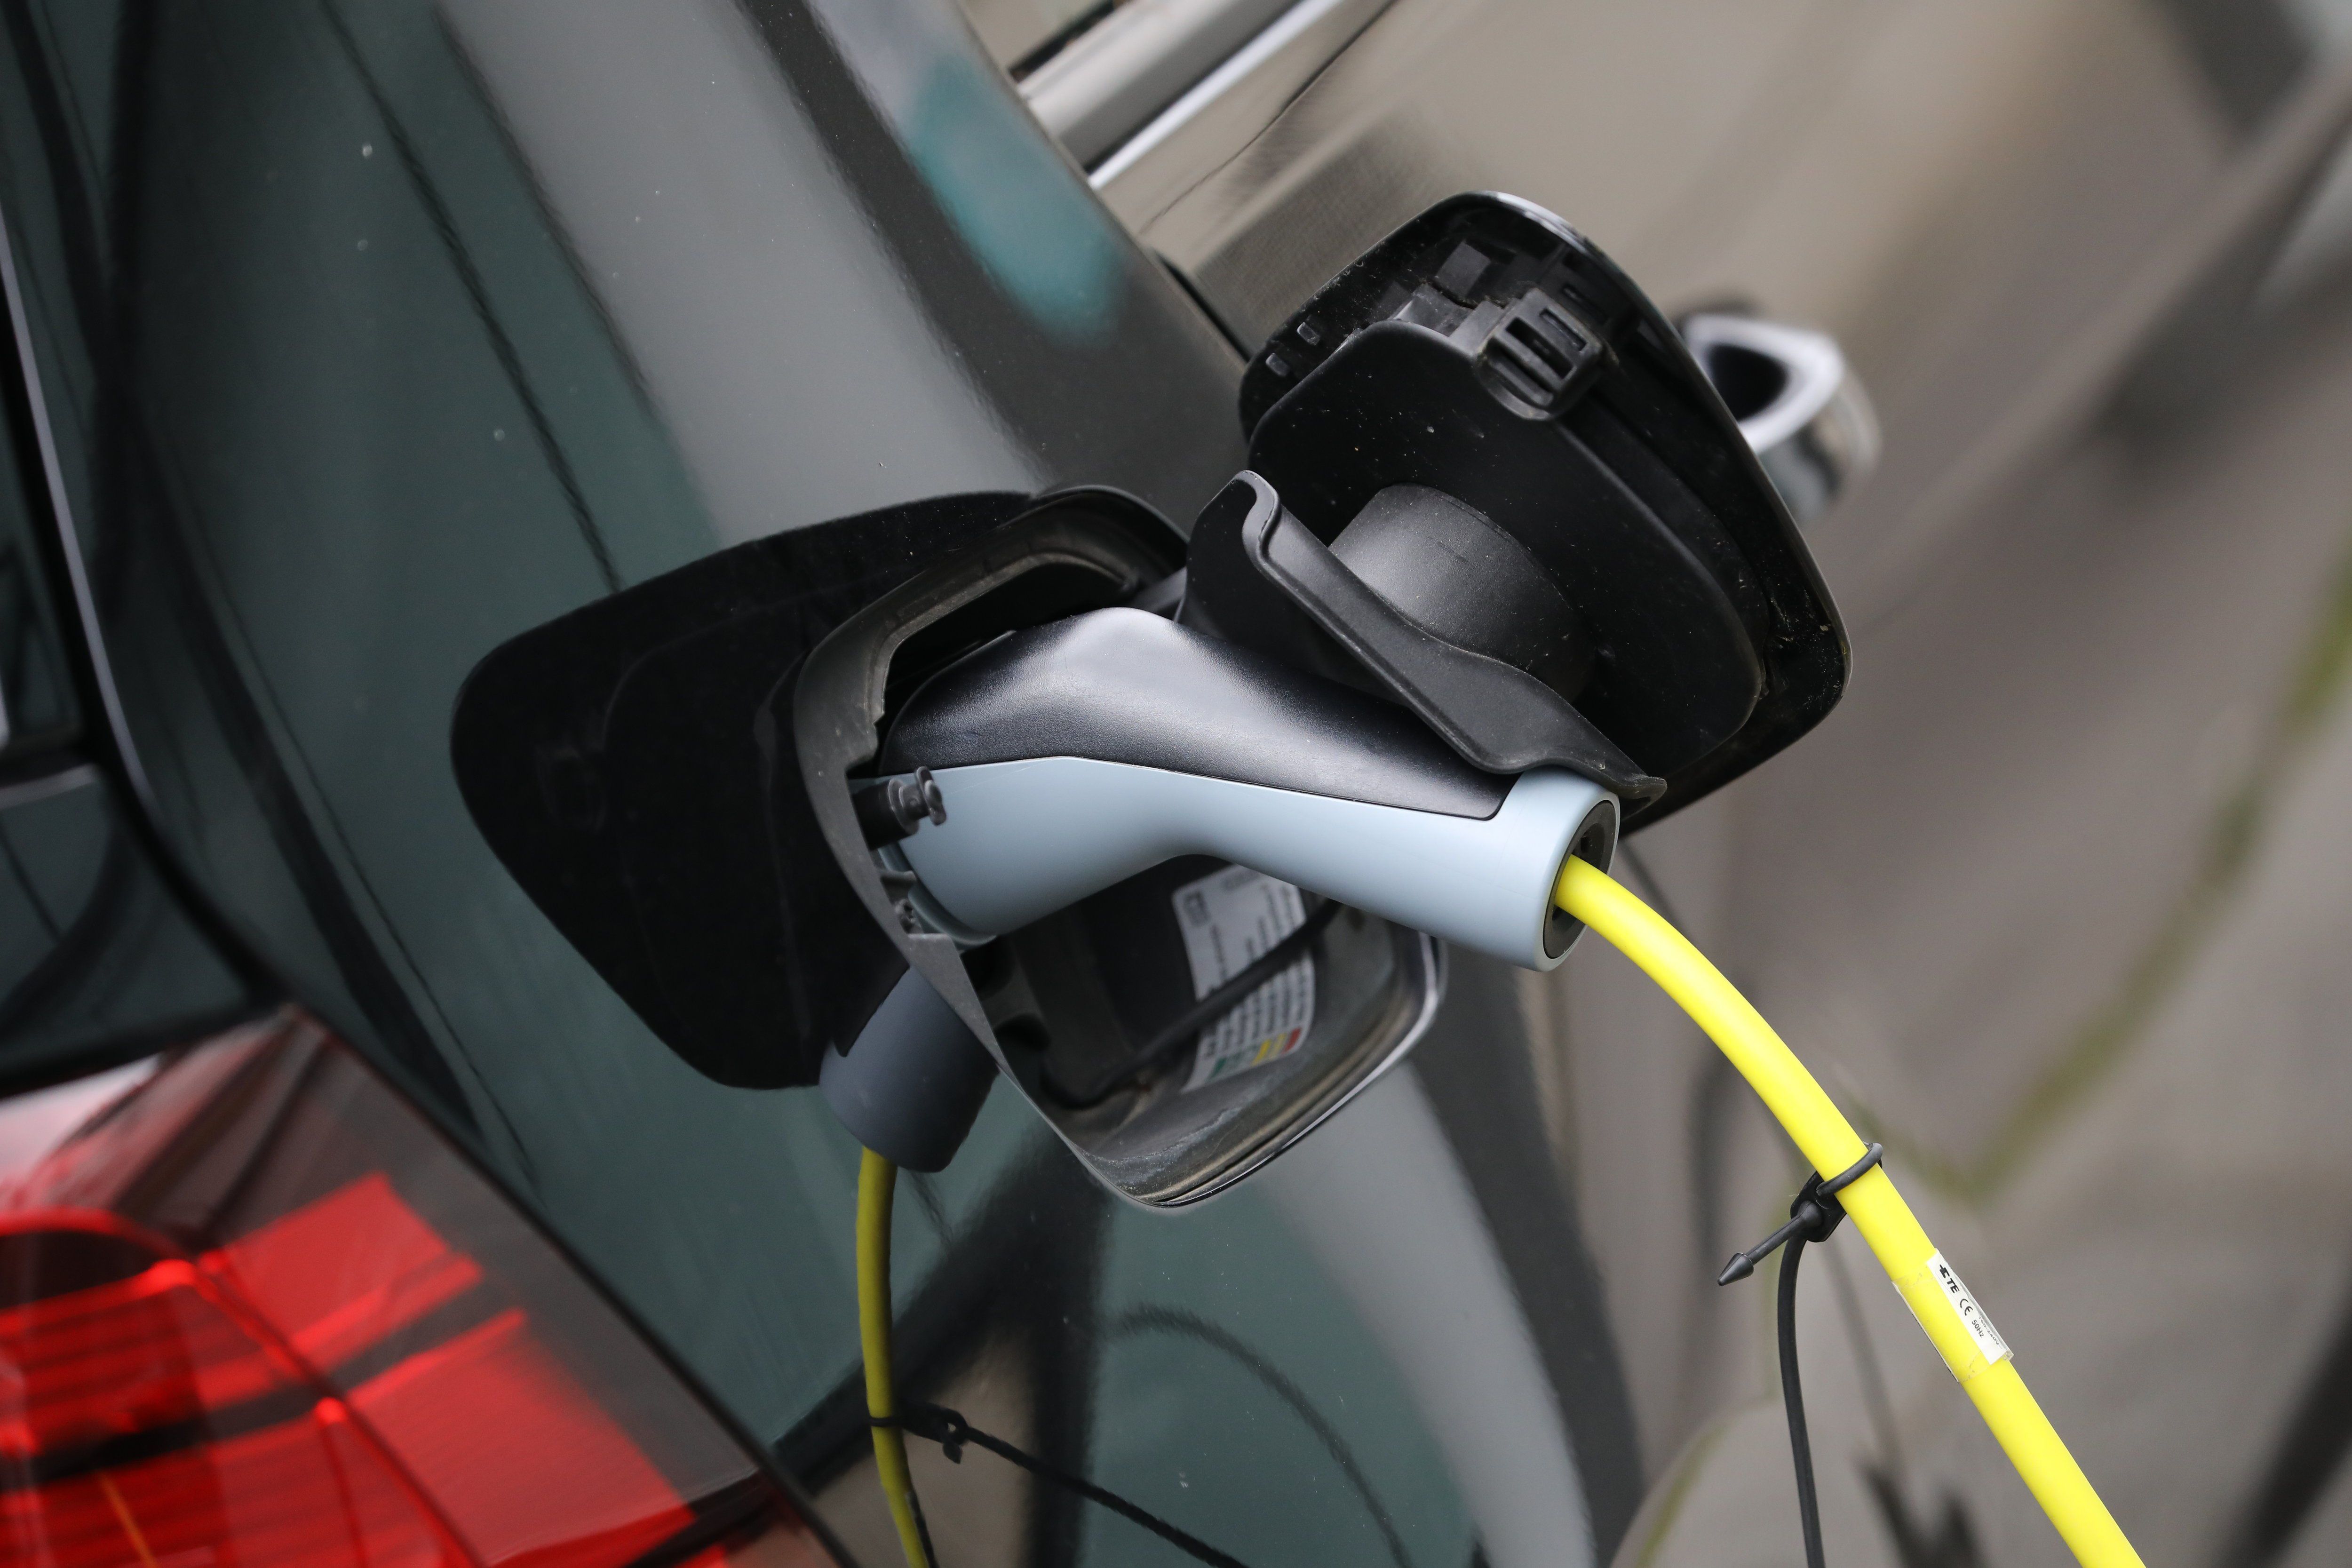 Le gouvernement souhaite promouvoir l'usage de la voiture électrique avec une offre de location « à prix accessible ». LP/Arnaud Journois